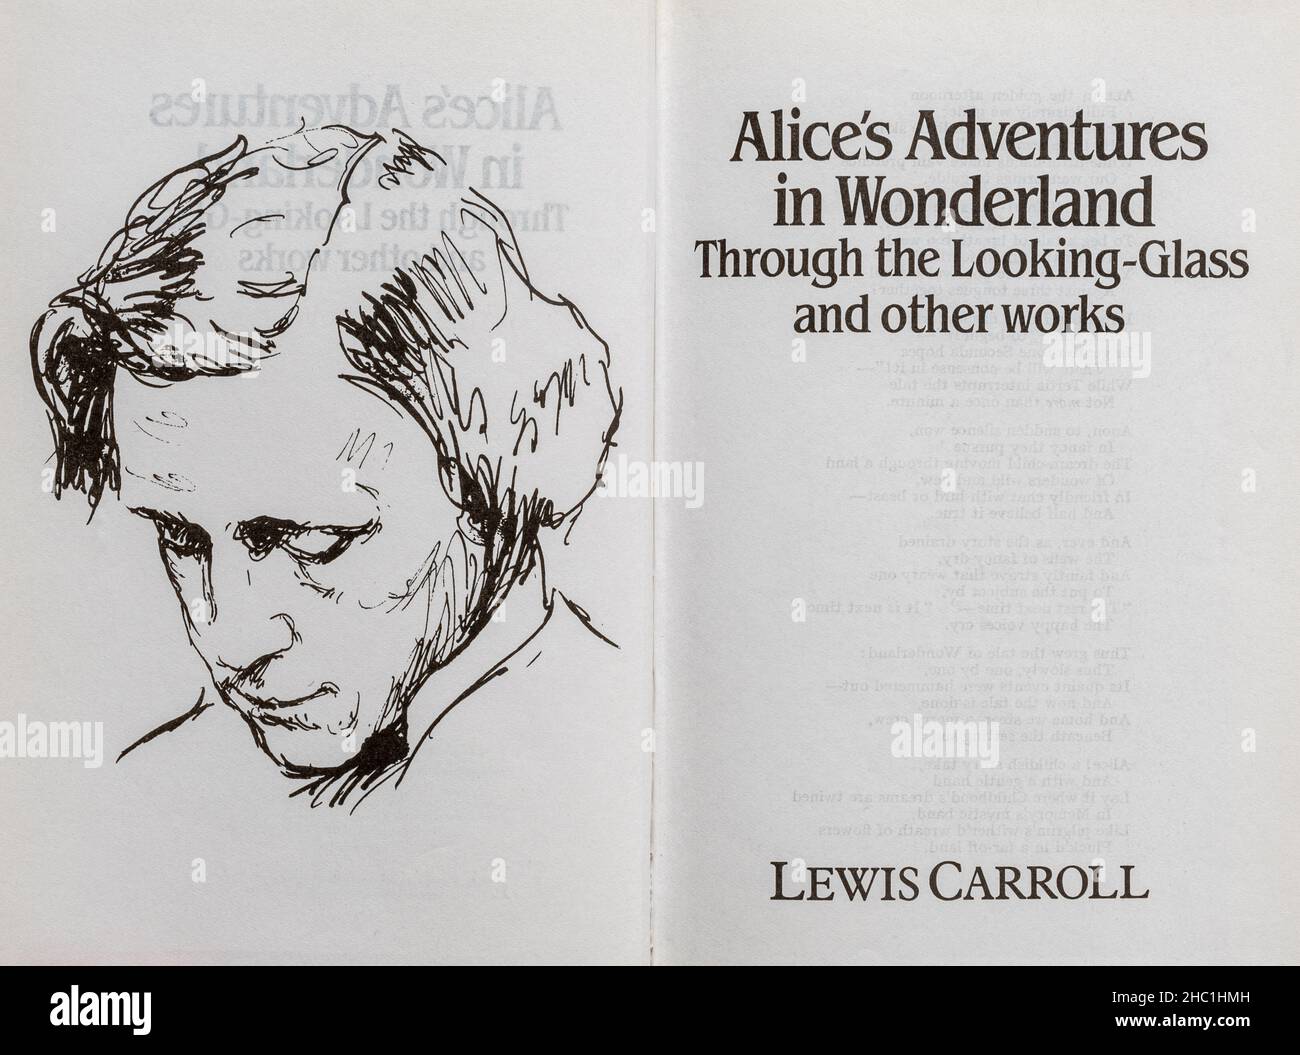 Alice's Adventures in Wonderland, durch das Looking-Glass Buch - klassischer Roman von Lewis Carroll. Titelseite und Zeichnung des Autors. Stockfoto